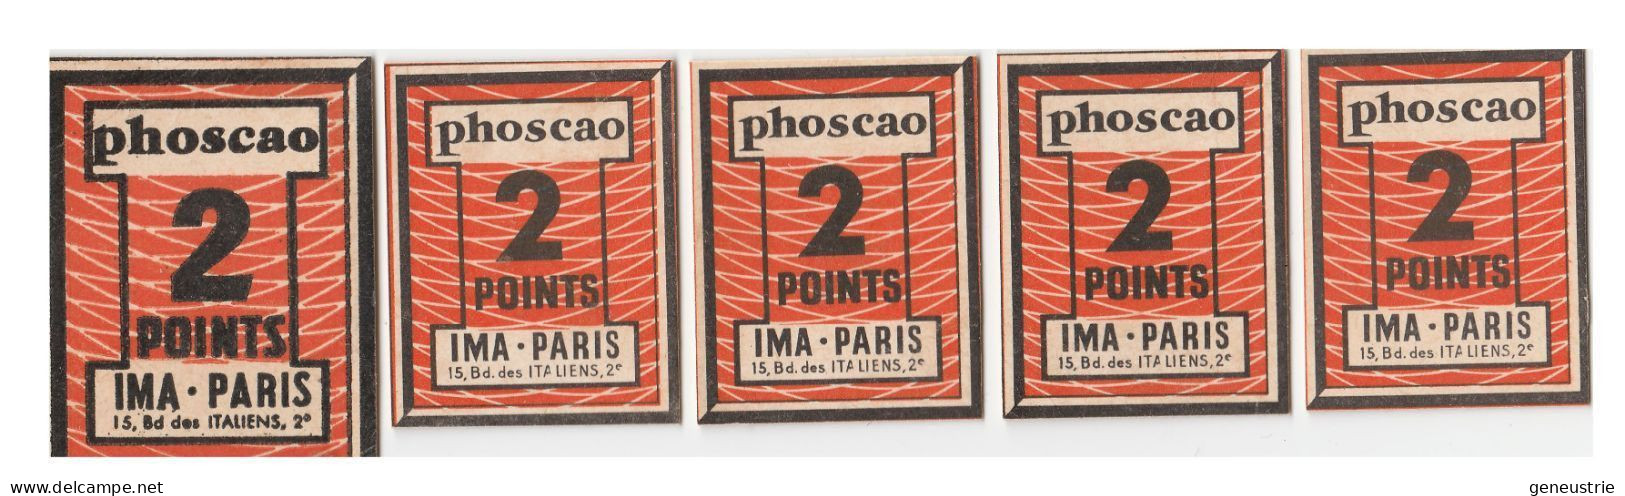 Lot De 5 Jeton-carton / Bon Prime Chocolat Années 50 "Phoscao 2 Points - IMA 15, Bd Des Italiens Paris 2e" - Monetary / Of Necessity